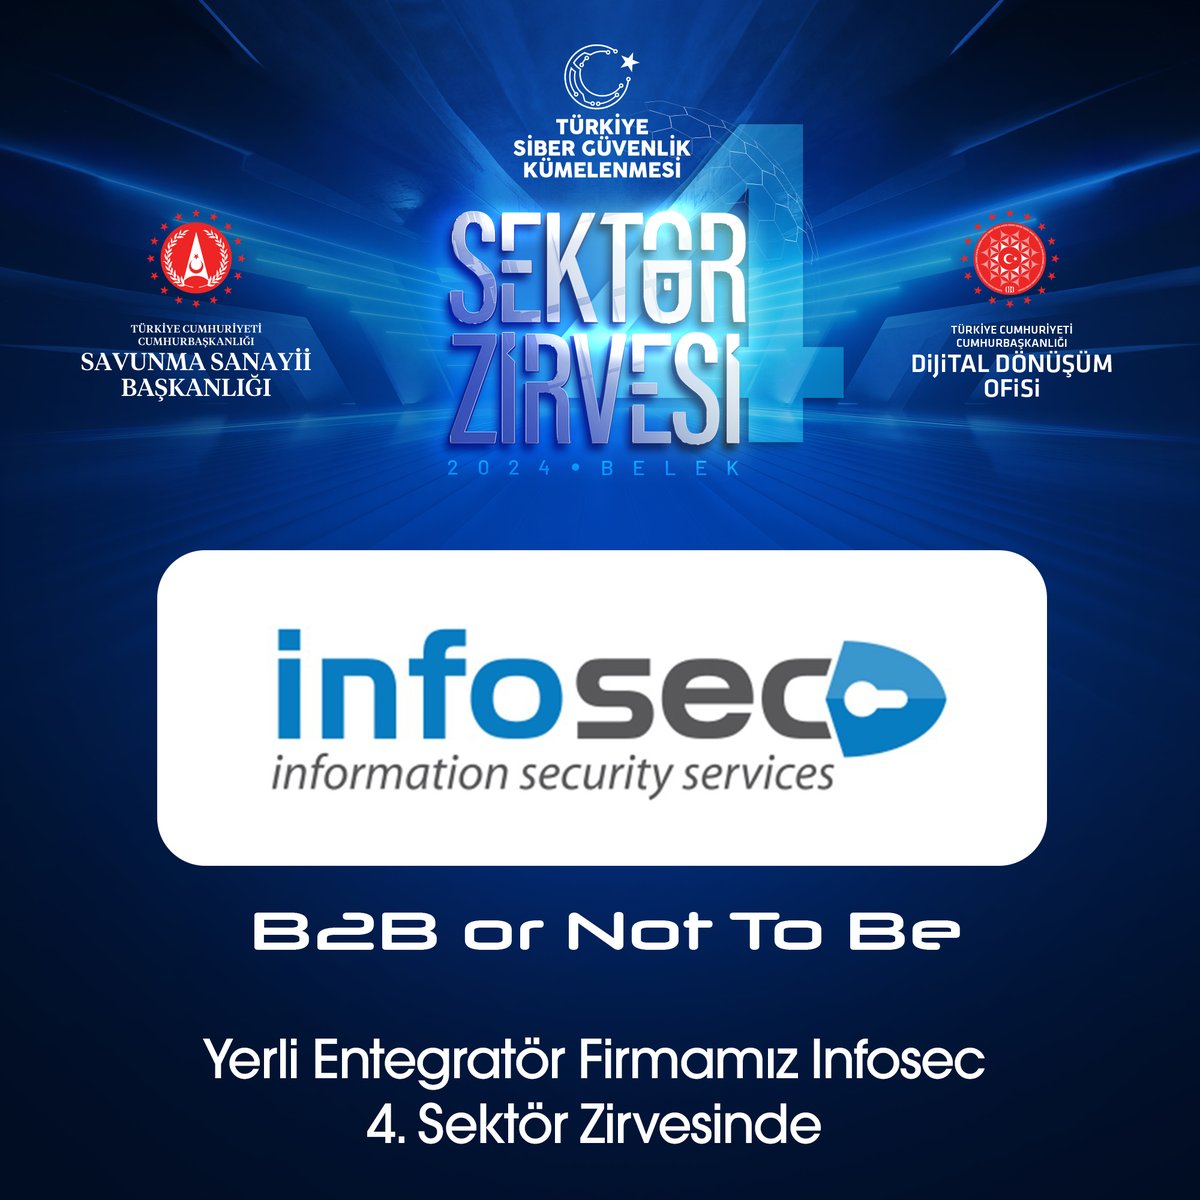 4’üncü Sektör Zirvesinde üyelerimize, B2B Görüşmelerinde yerli entegratör üye firmamız INFOSEC ile bir araya gelme fırsatı sunuyoruz. #sibergüvenlik #cybersecurity #b2b #sektörzirvesi #sectorsummit